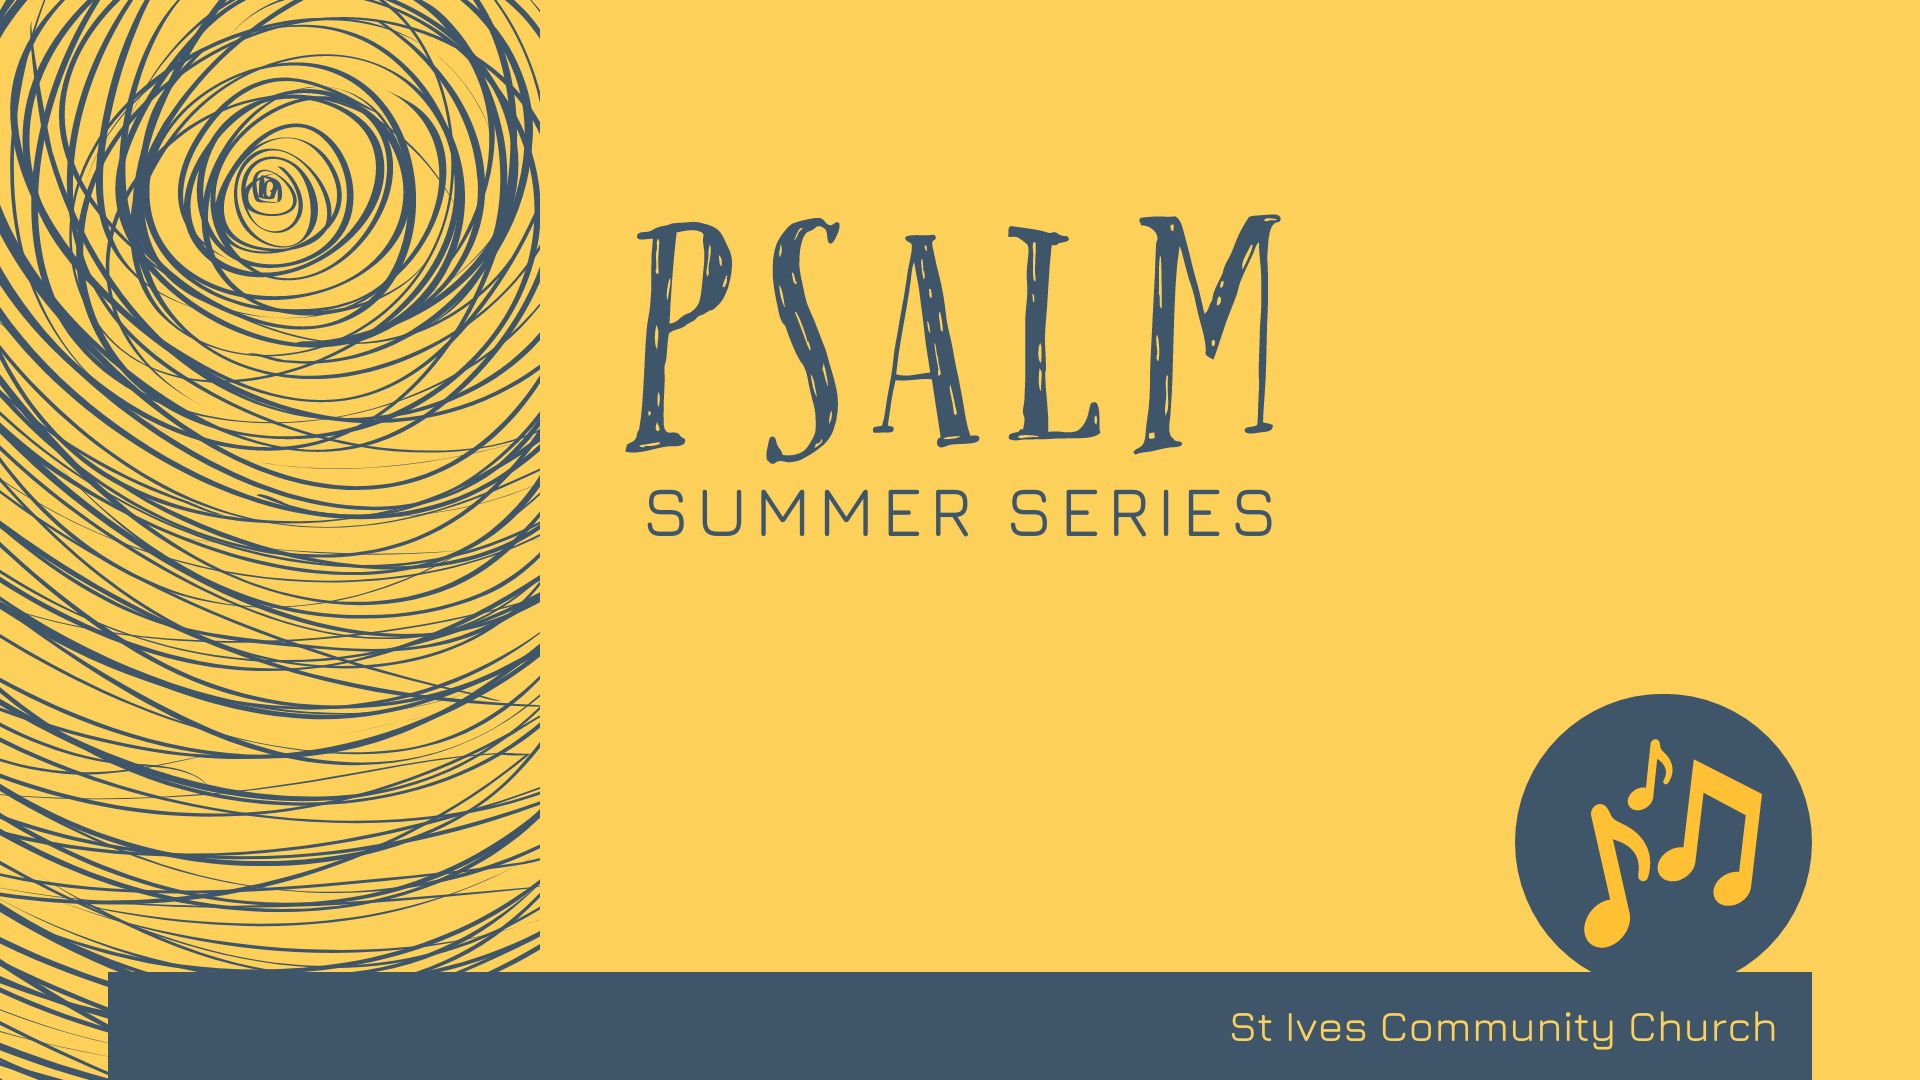 Psalm summer series